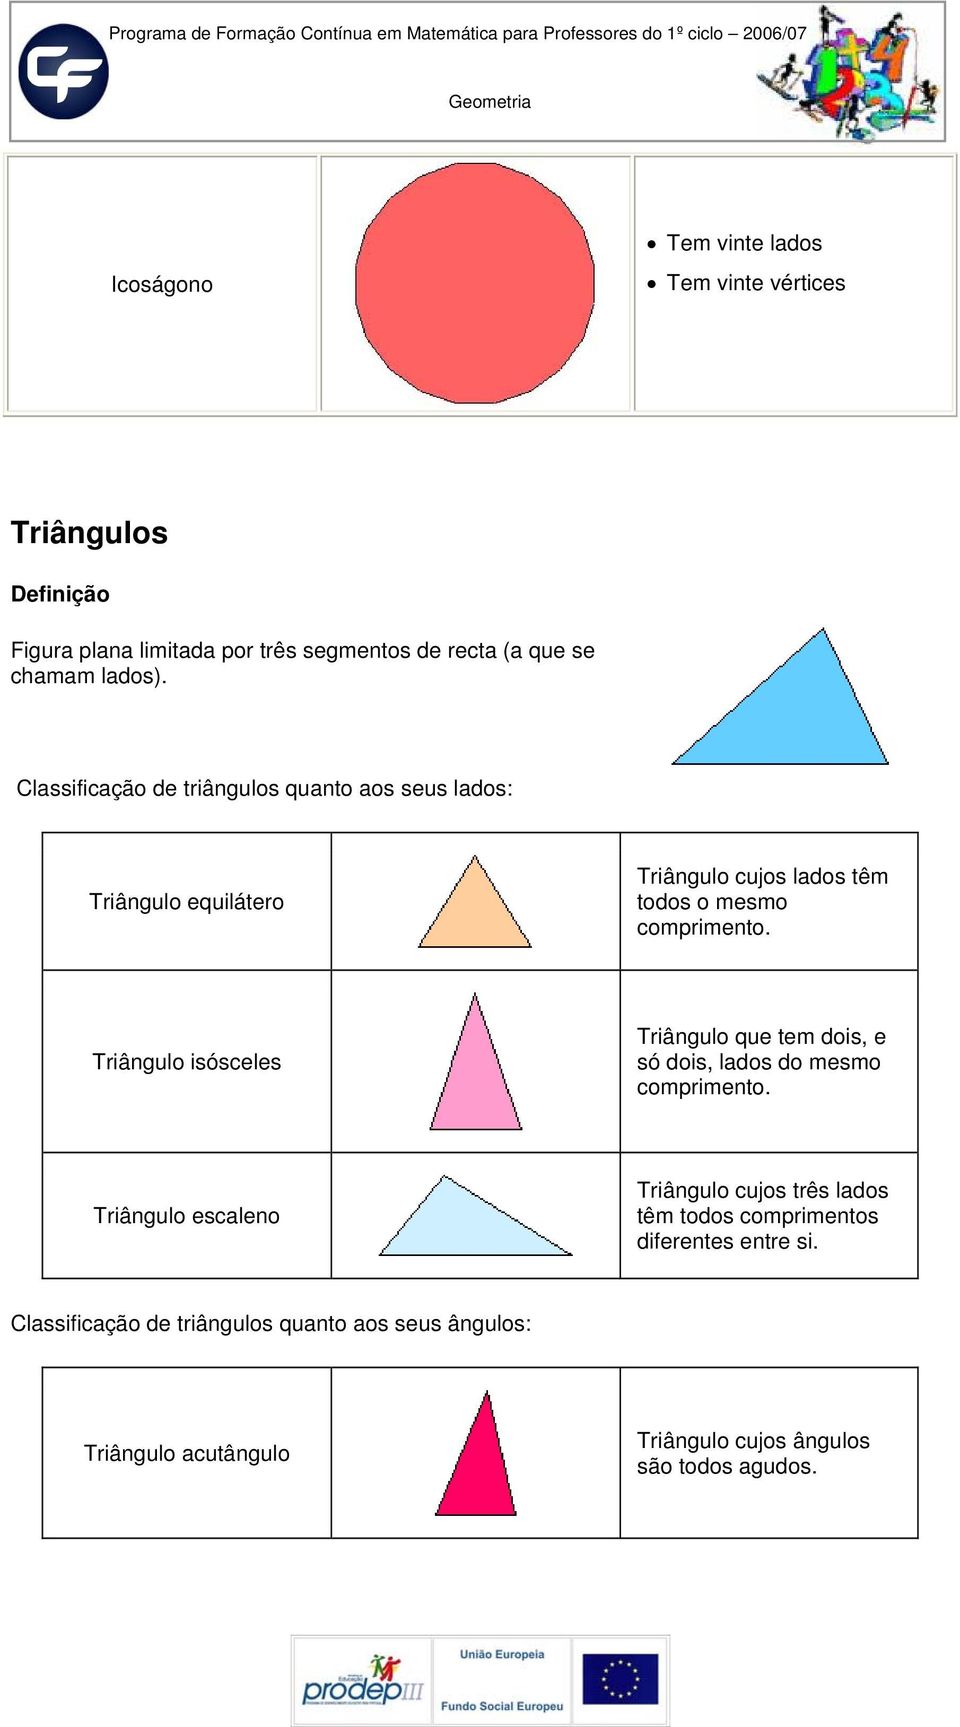 Triângulo isósceles Triângulo que tem dois, e só dois, lados do mesmo comprimento.